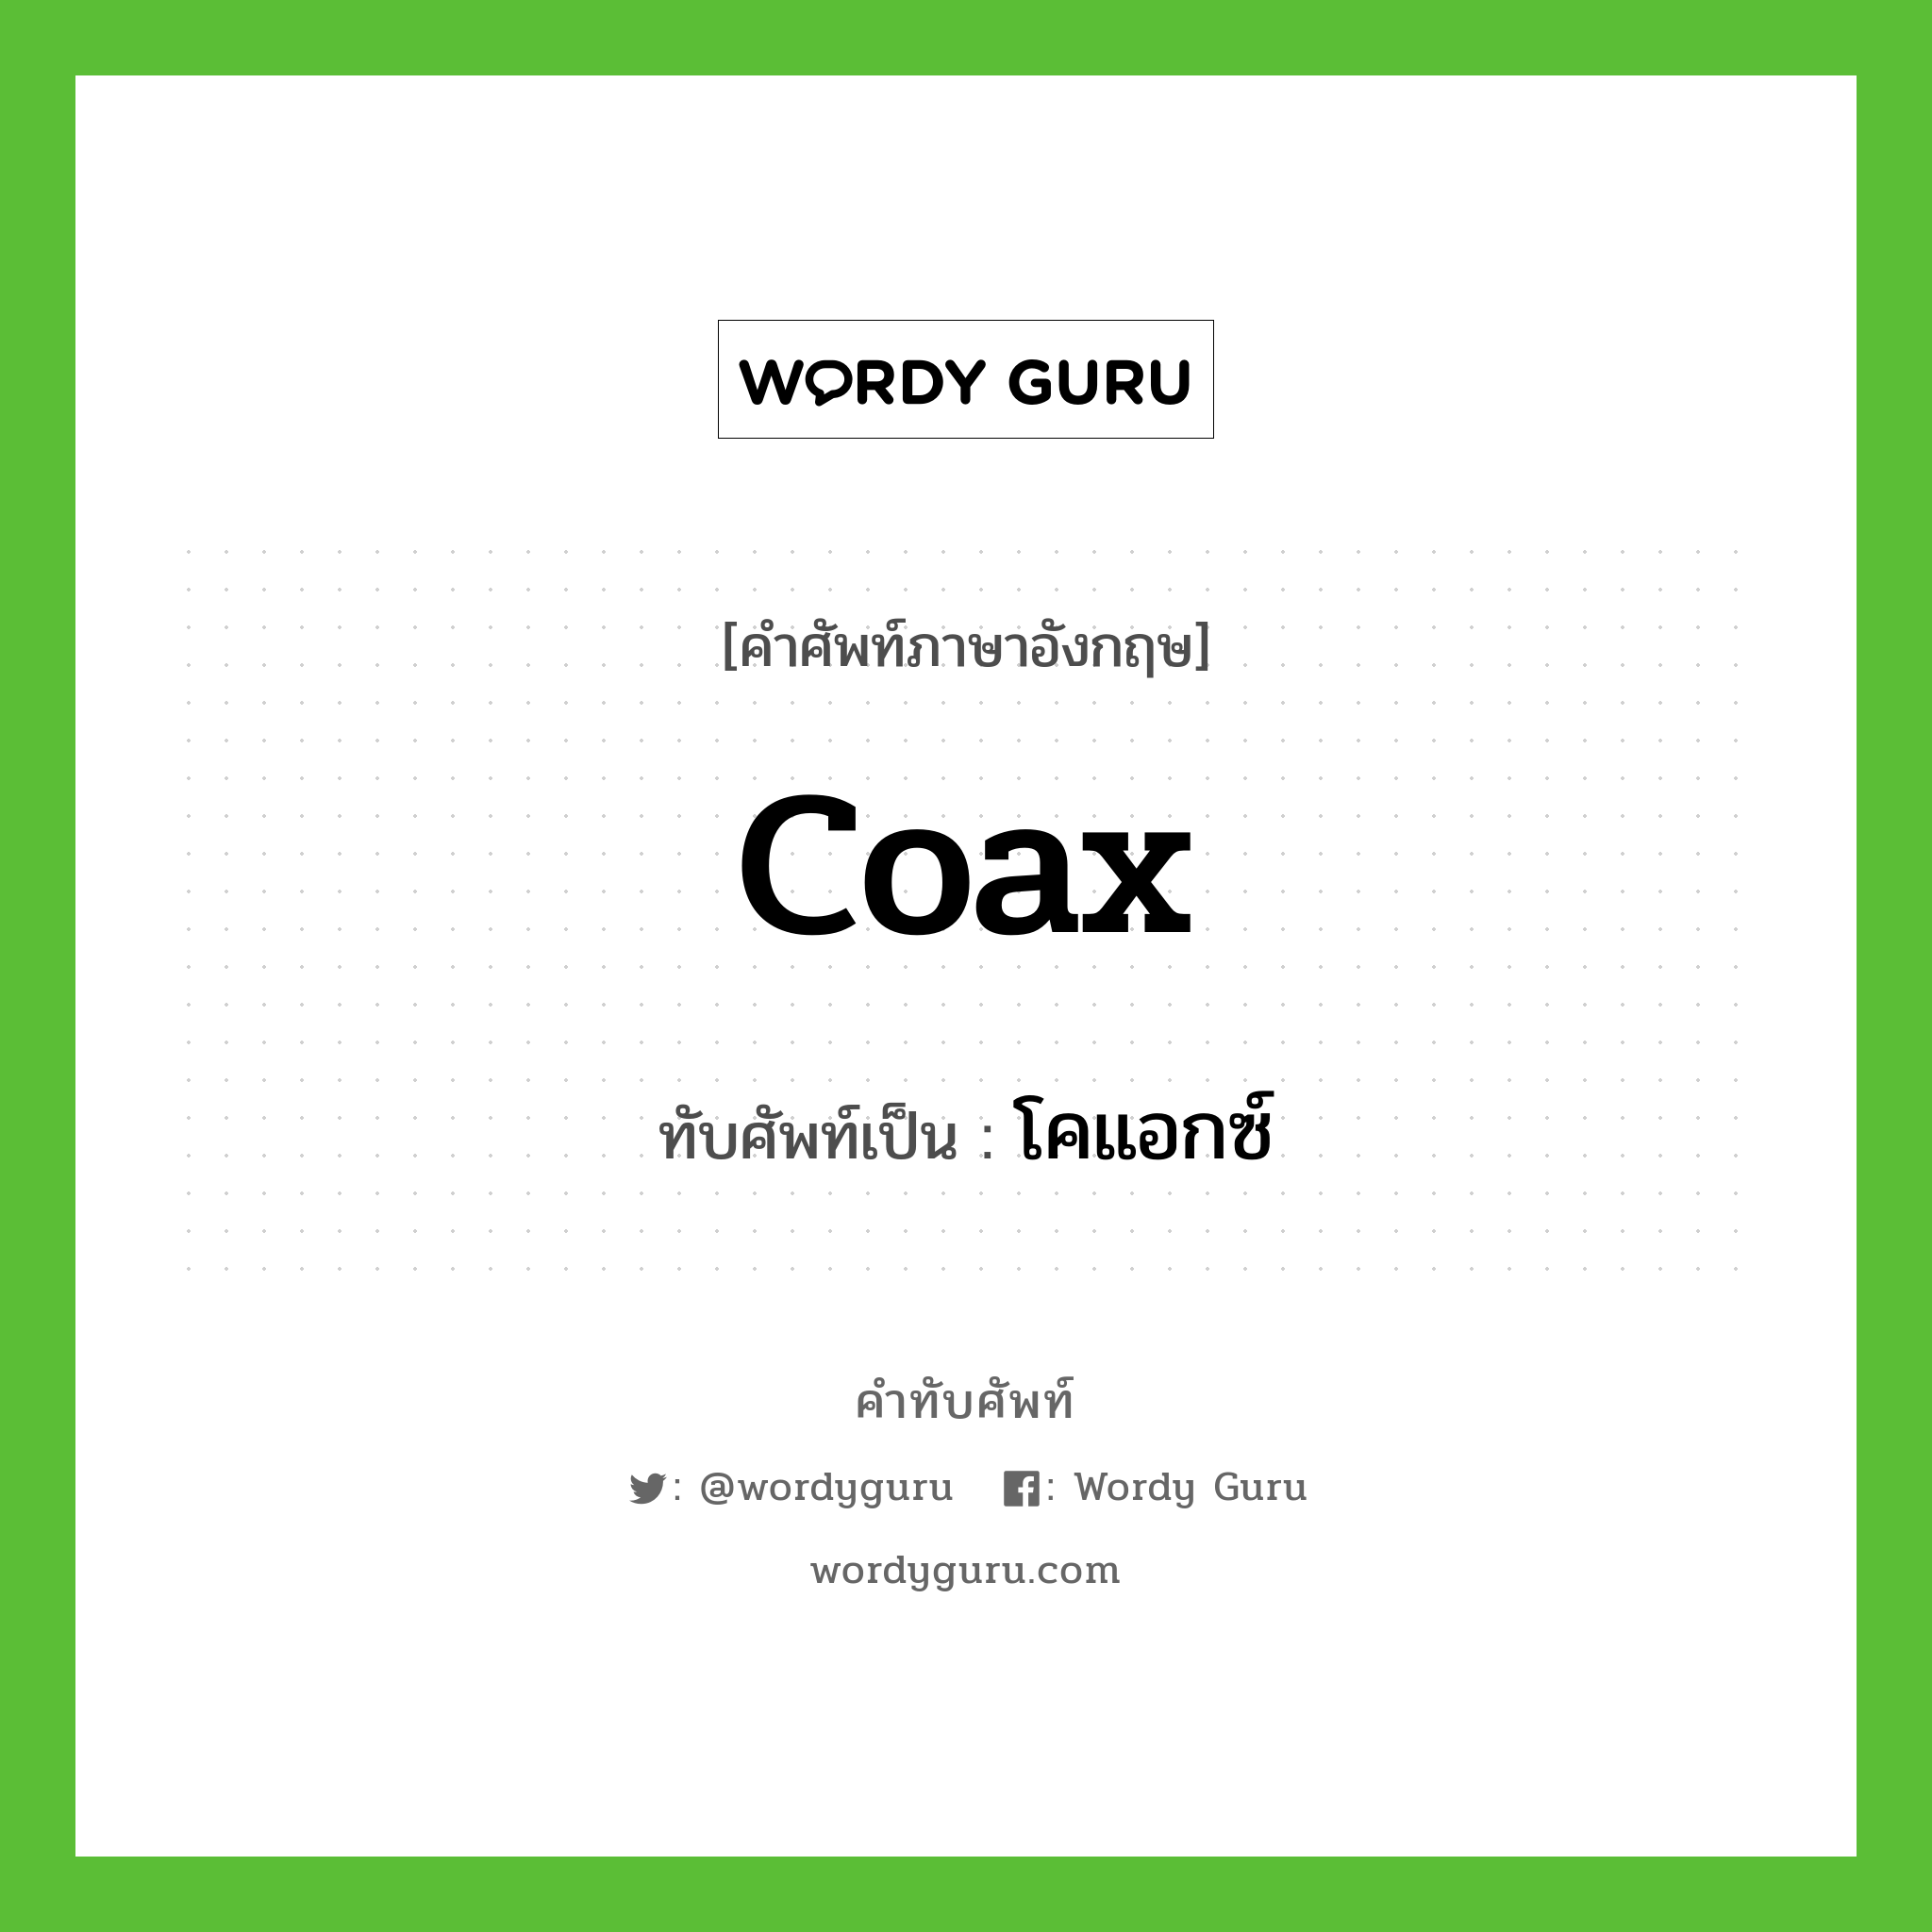 coax เขียนเป็นคำไทยว่าอะไร?, คำศัพท์ภาษาอังกฤษ coax ทับศัพท์เป็น โคแอกซ์